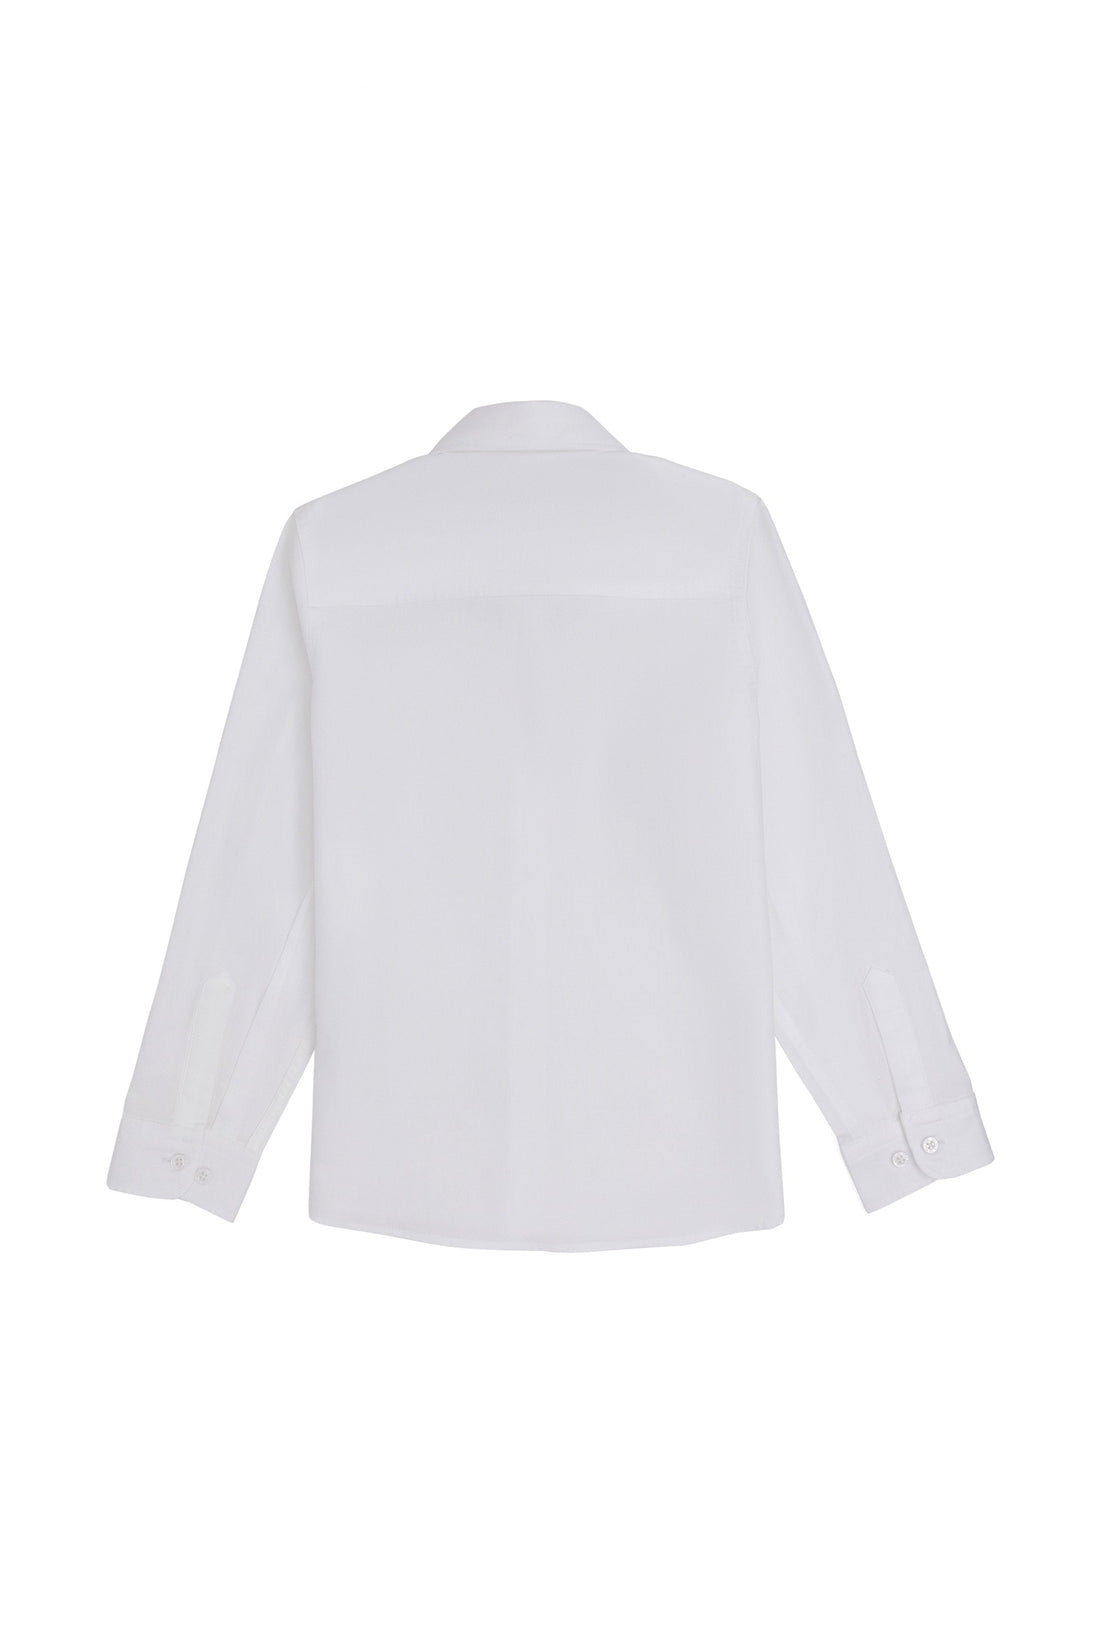 Girls White Shirt Long Sleeve_G084SZ0040 1840582_VR013_02